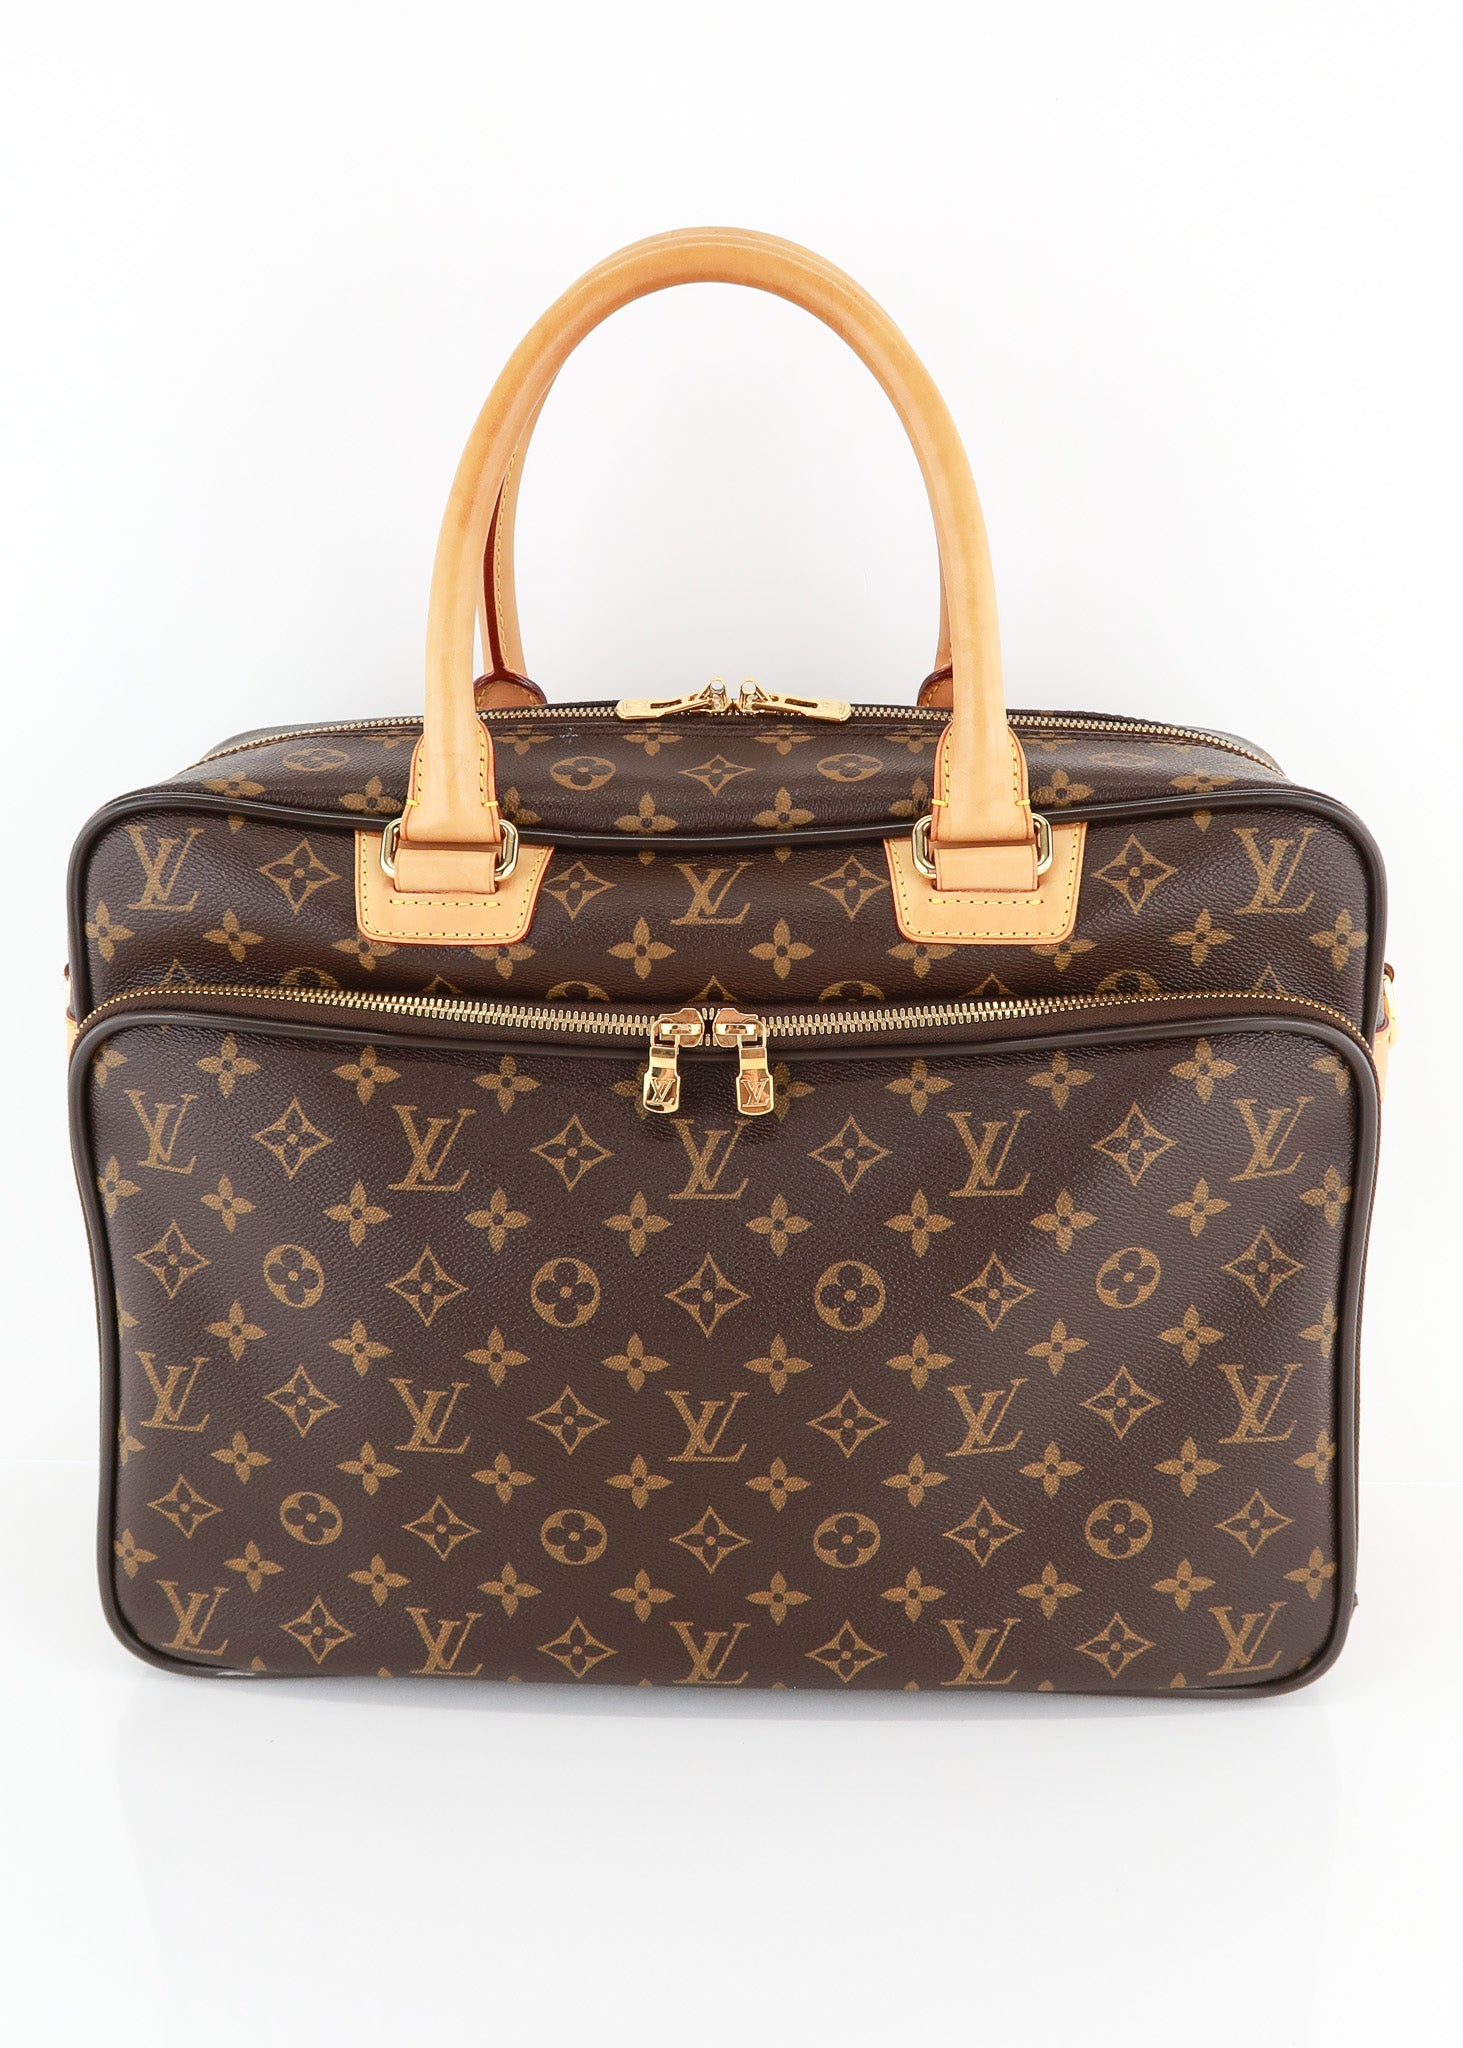 Louis Vuitton Women's Bags & Laptop Bag, Authenticity Guaranteed